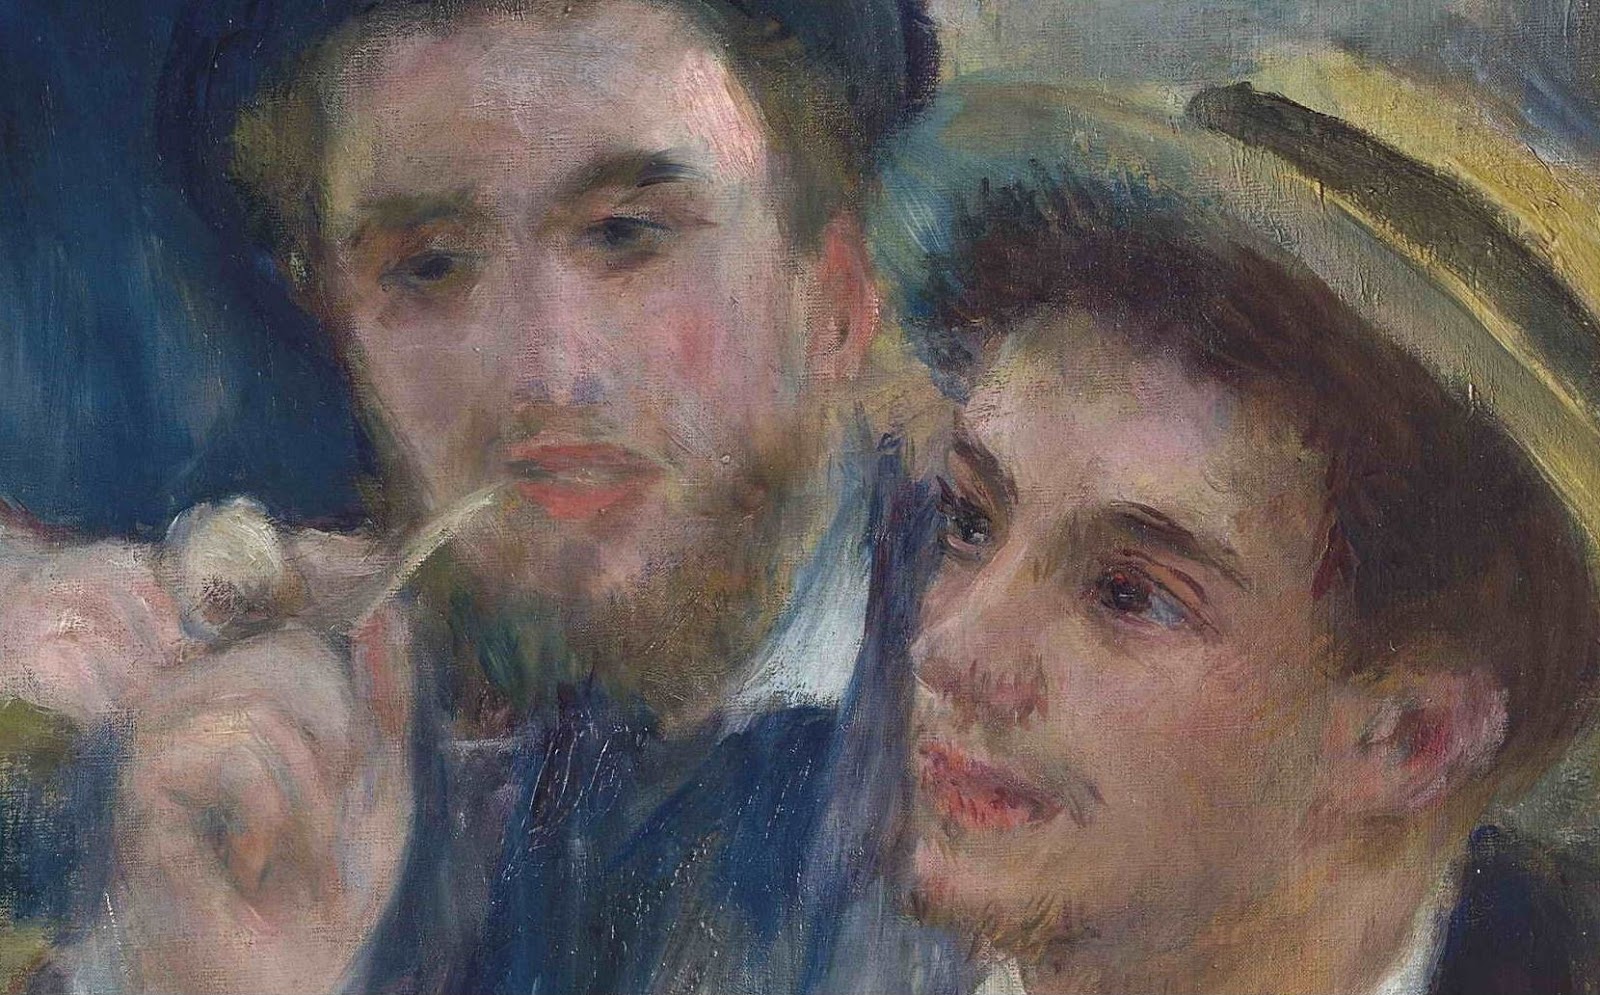 Pierre+Auguste+Renoir-1841-1-19 (450).JPG